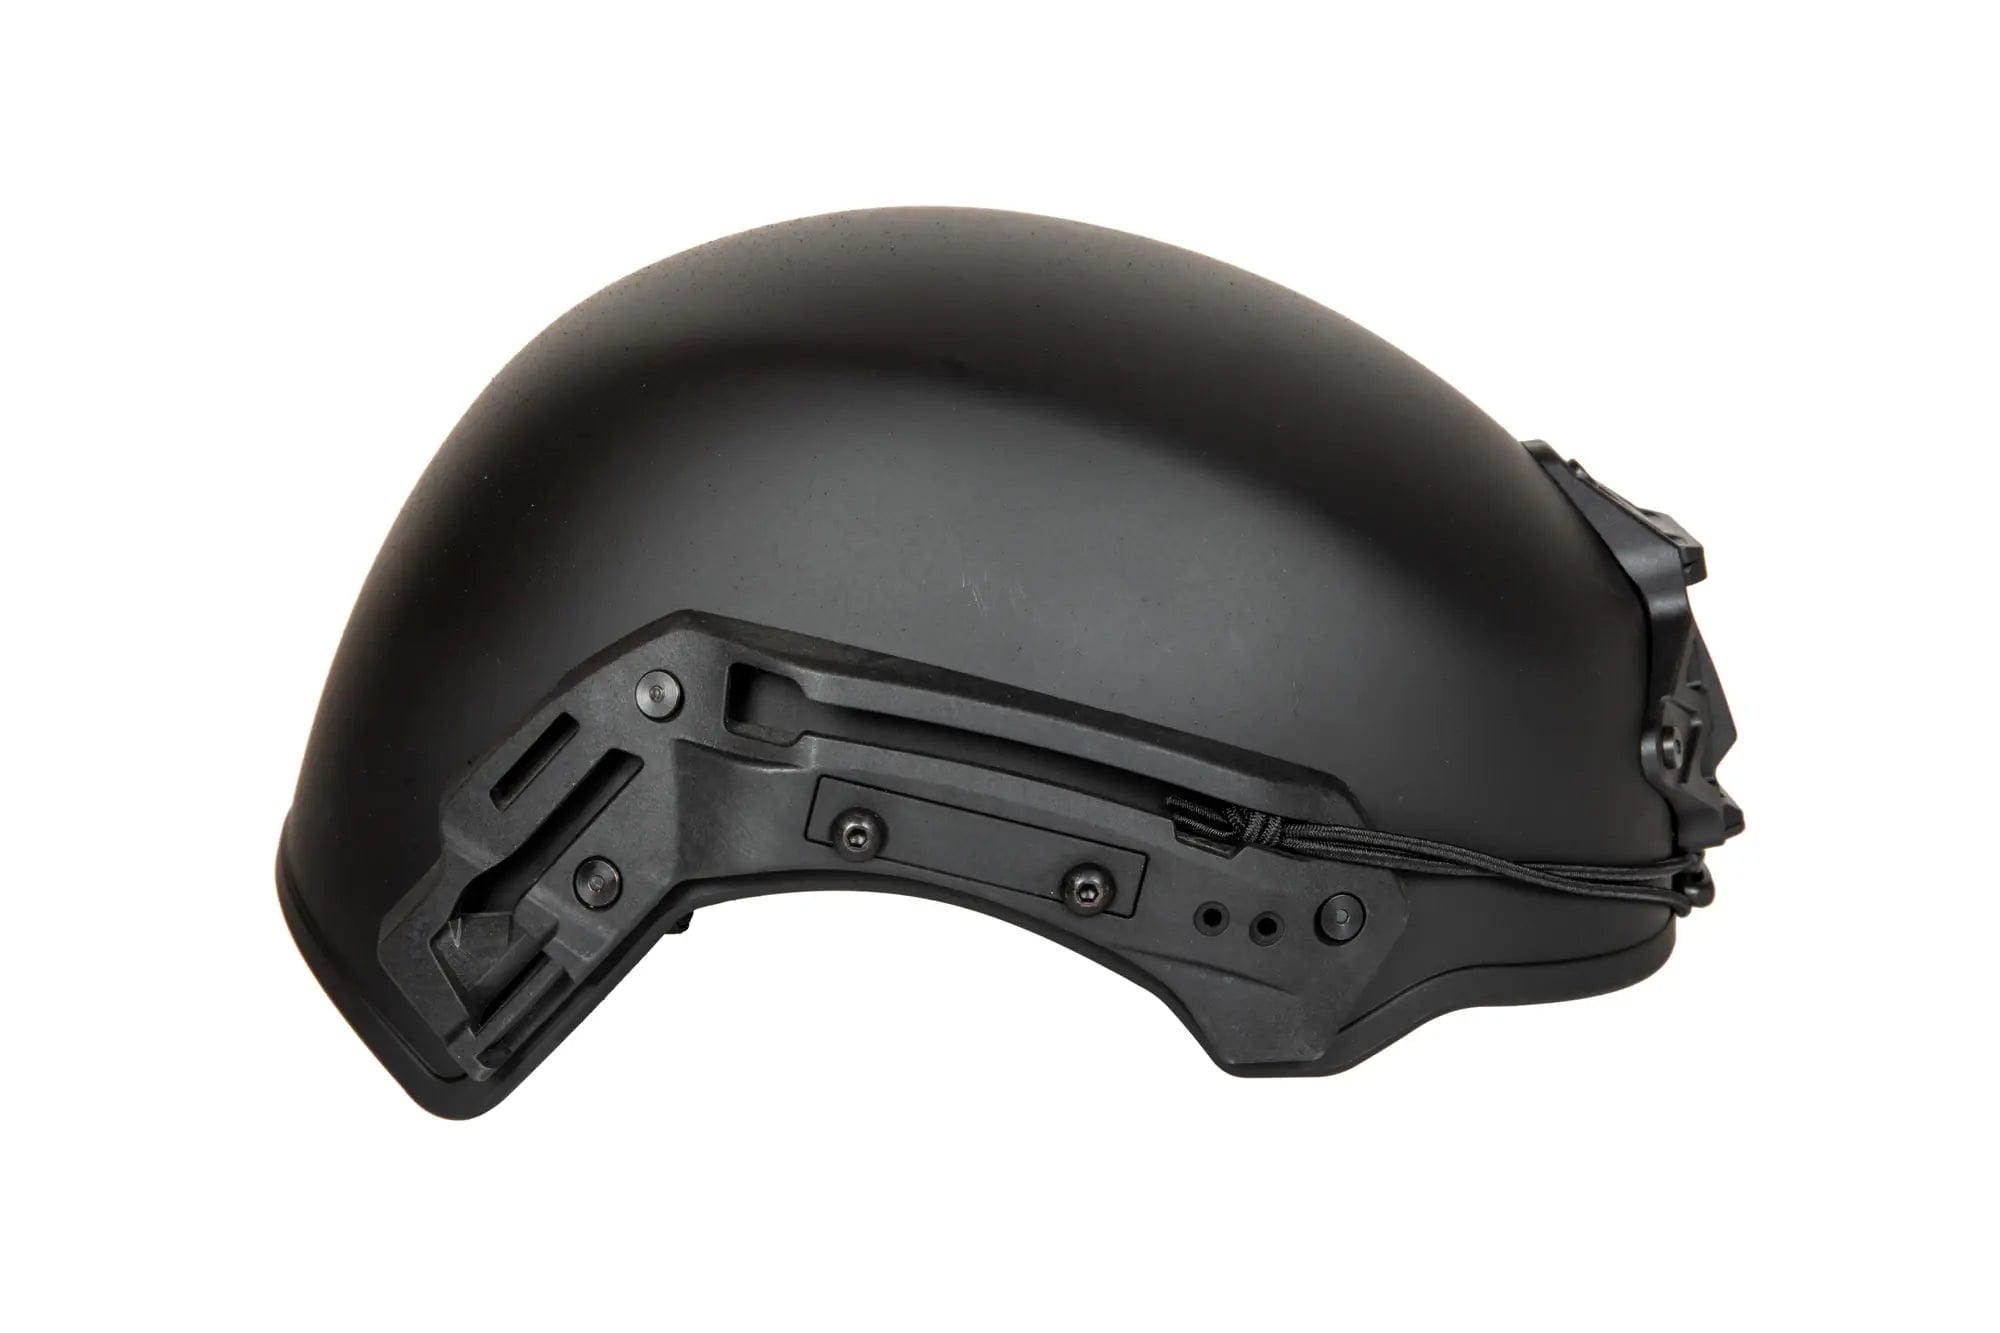 EXFIL helmet (L/XL) - Black